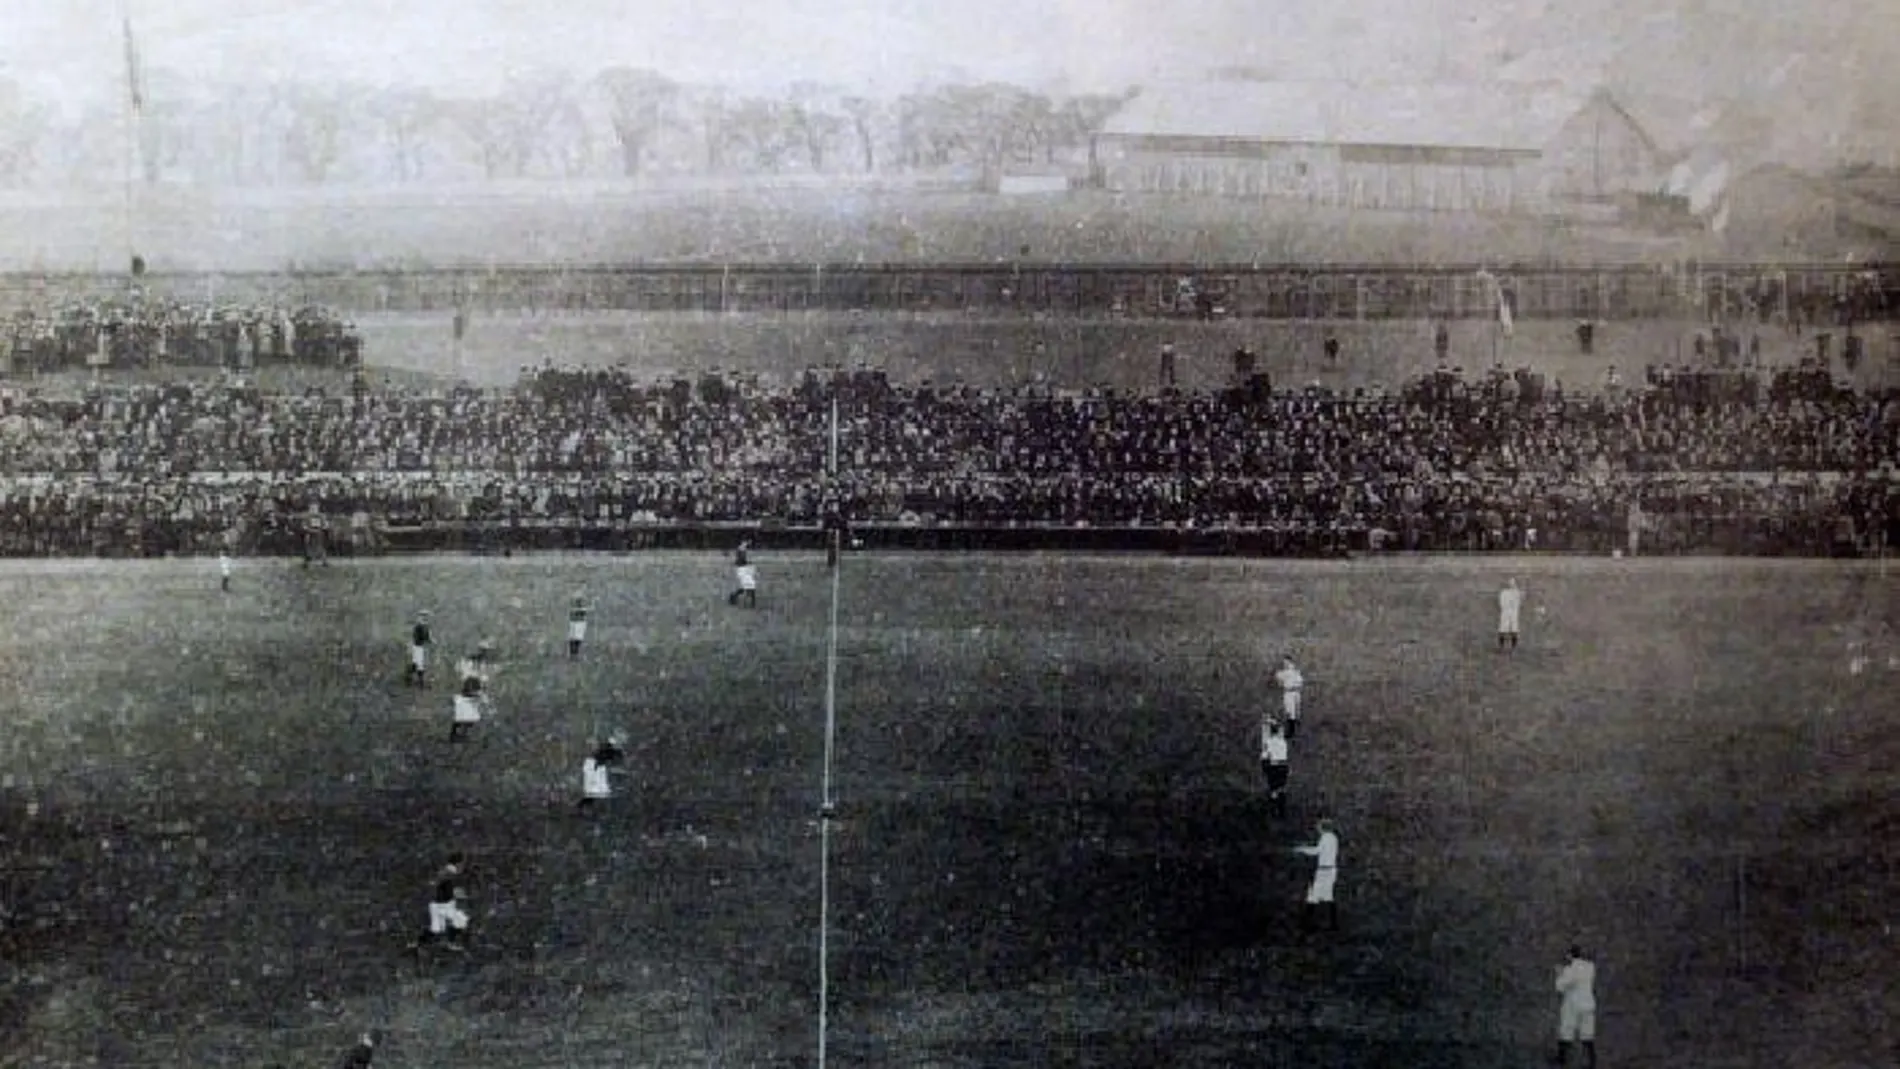 Escocia e Inglaterra comenzaron su rivalidad en rugby el 27 de marzo de 1871 